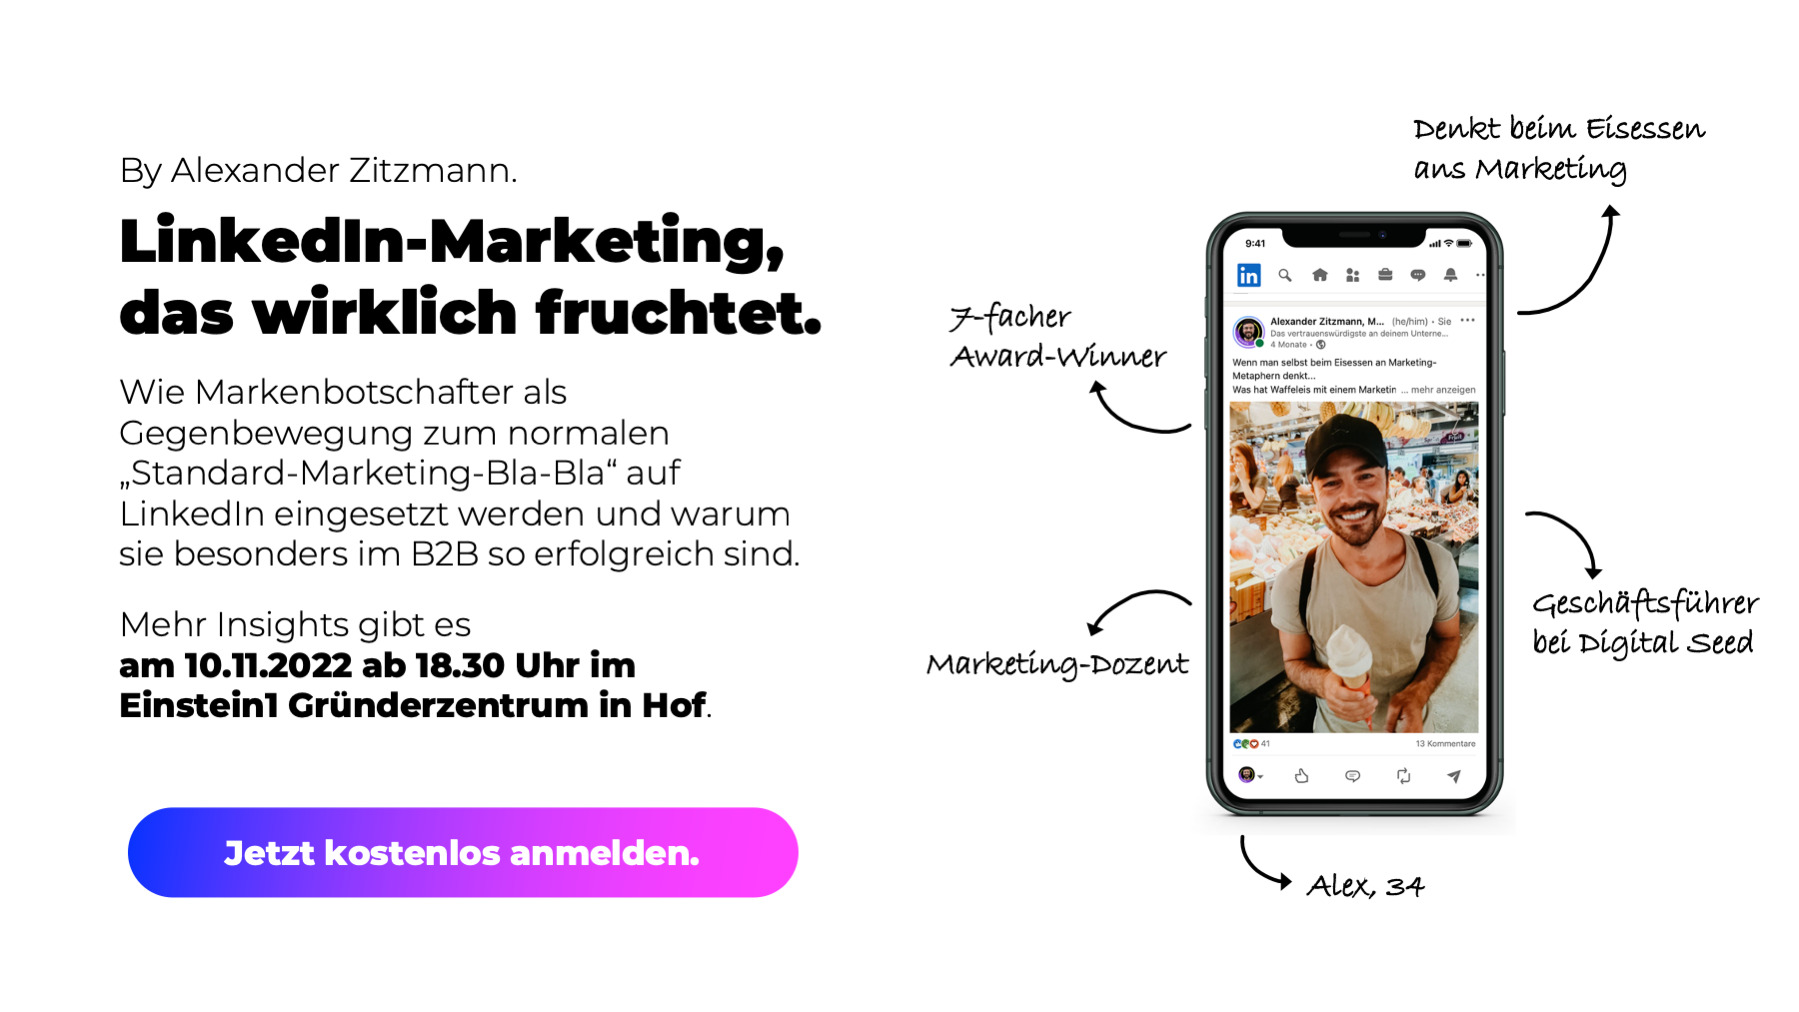 linkedin-marketing-Teaser-Vortrag-in-Hof-einstein1